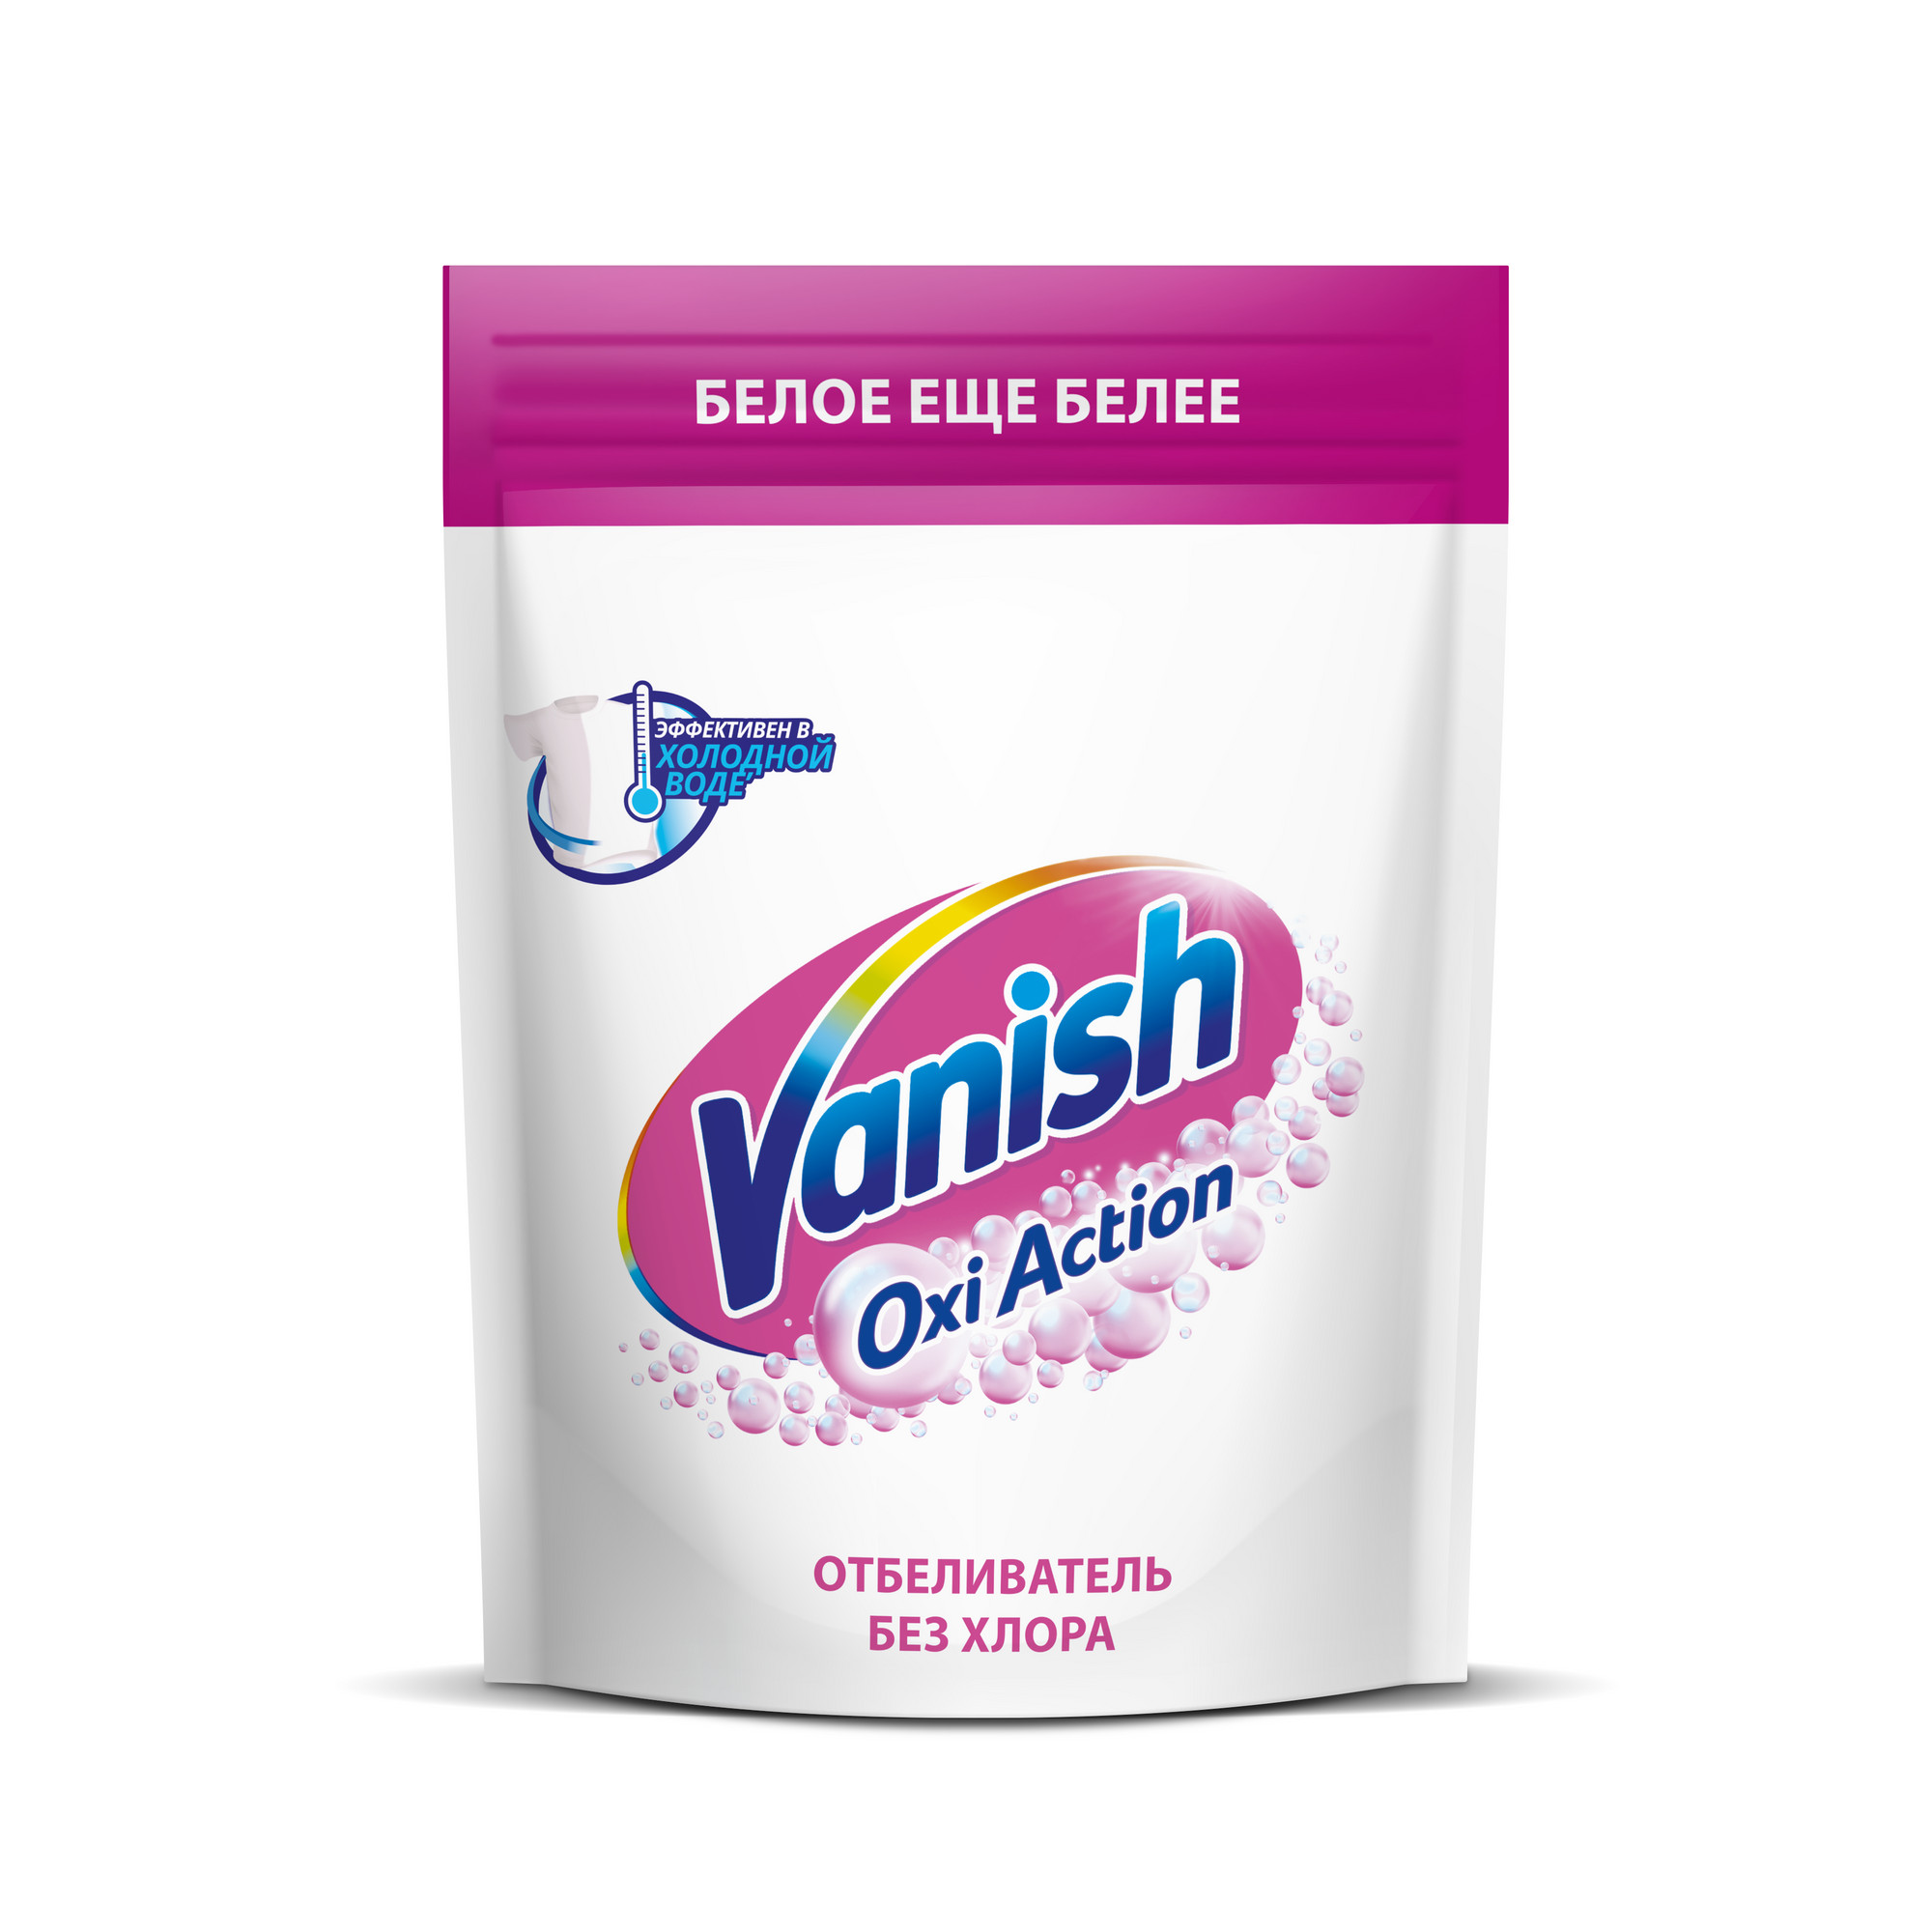 Пятновыводитель Vanish Oxi Action Кристальная белизна для тканей порошкообразный 500 г пятновыводитель vanish oxi action кристальная белизна с отбеливателем 1 л